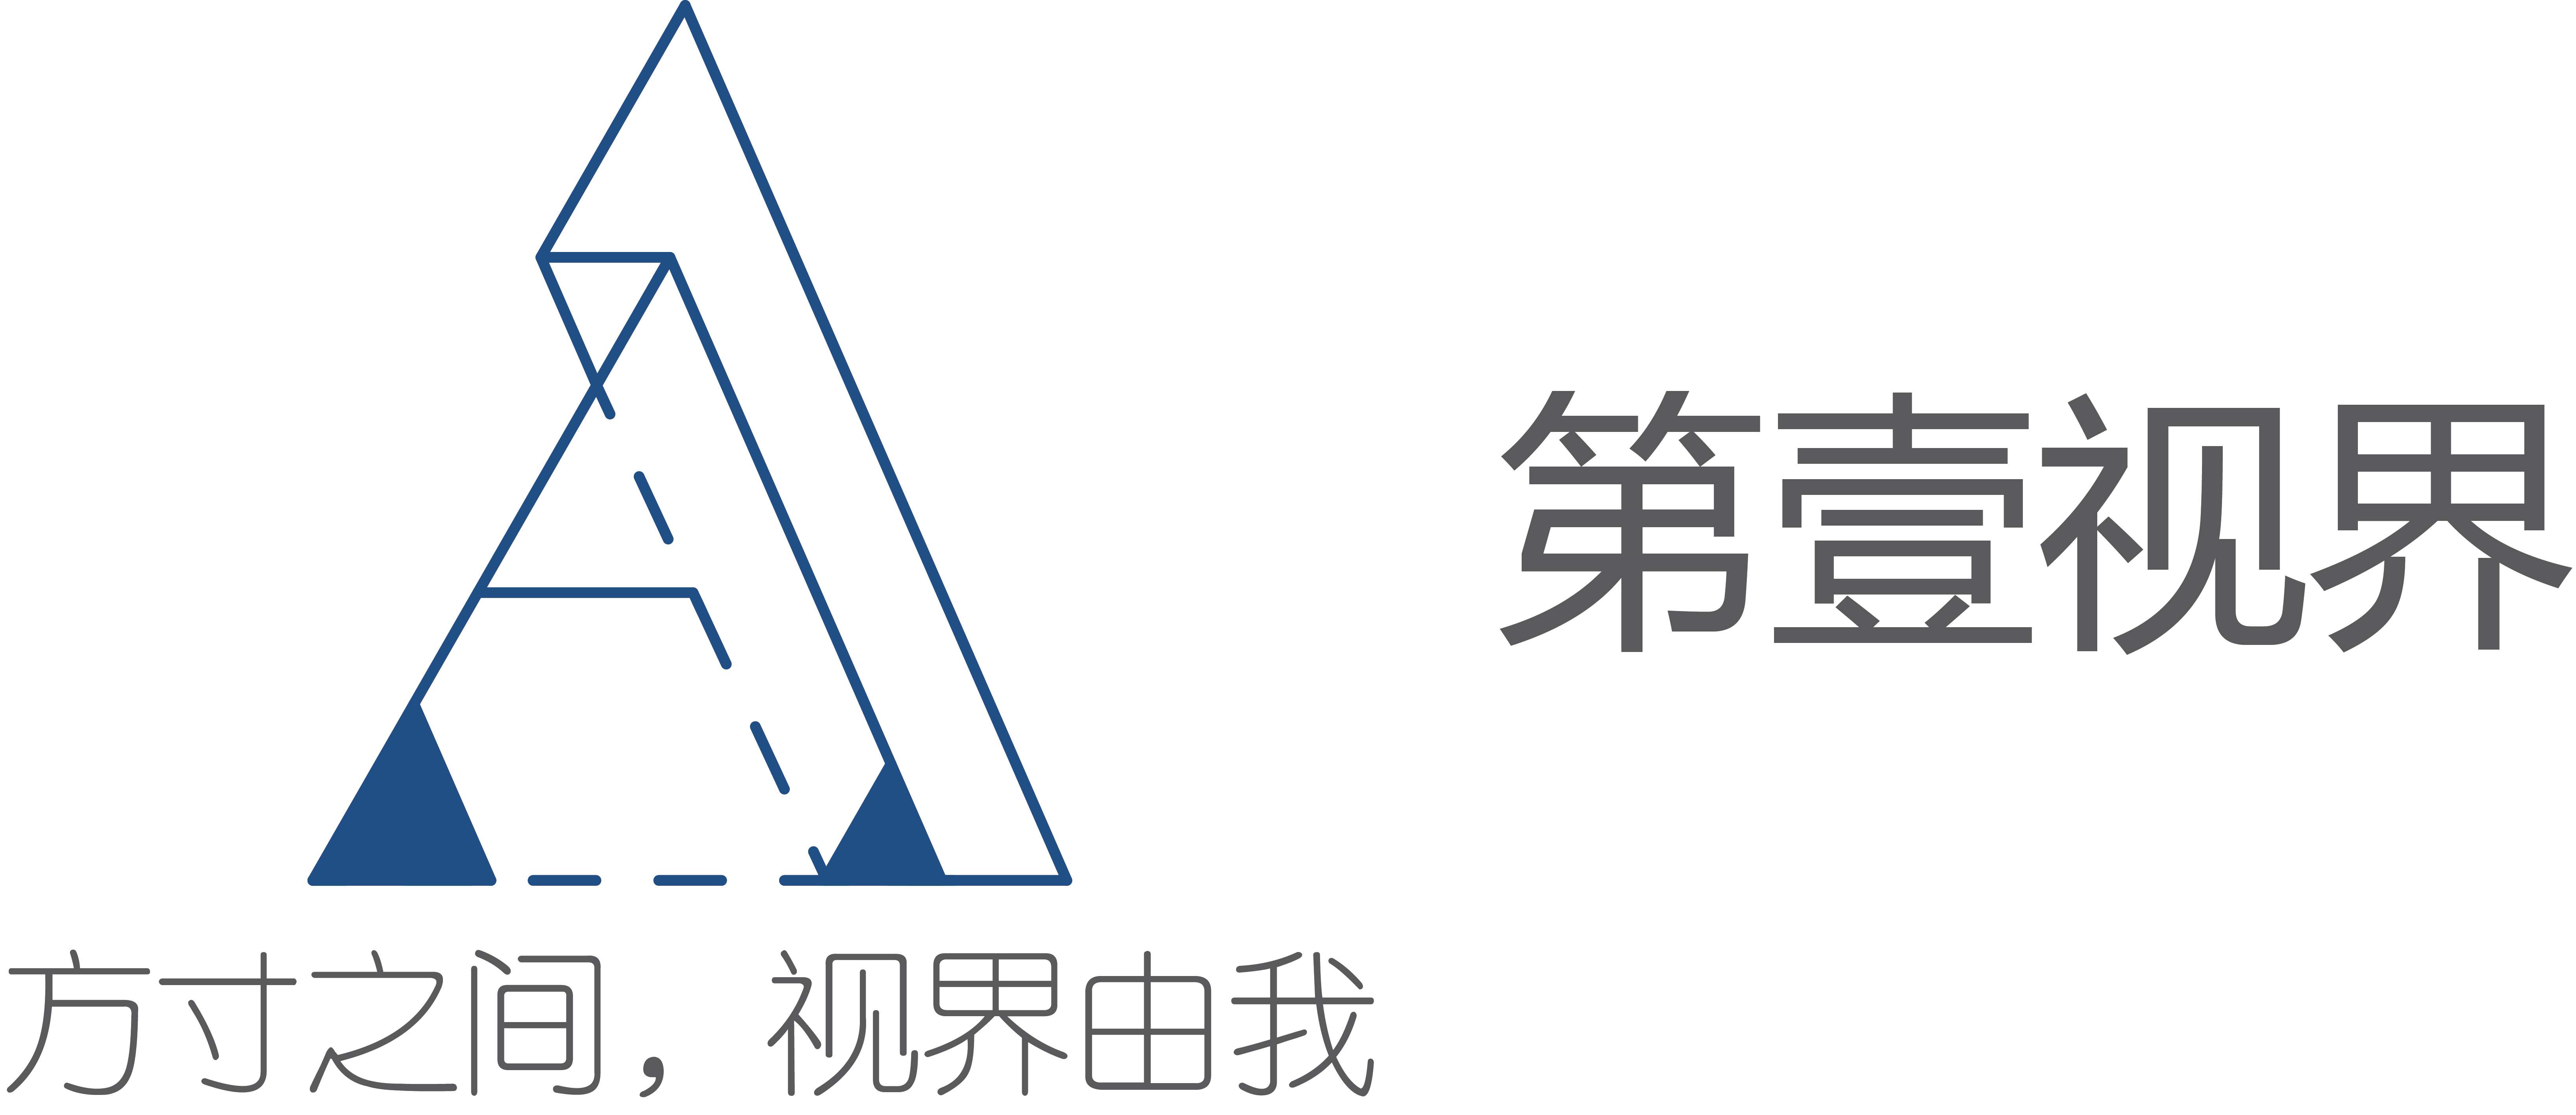 第壹视界元素logo.jpg